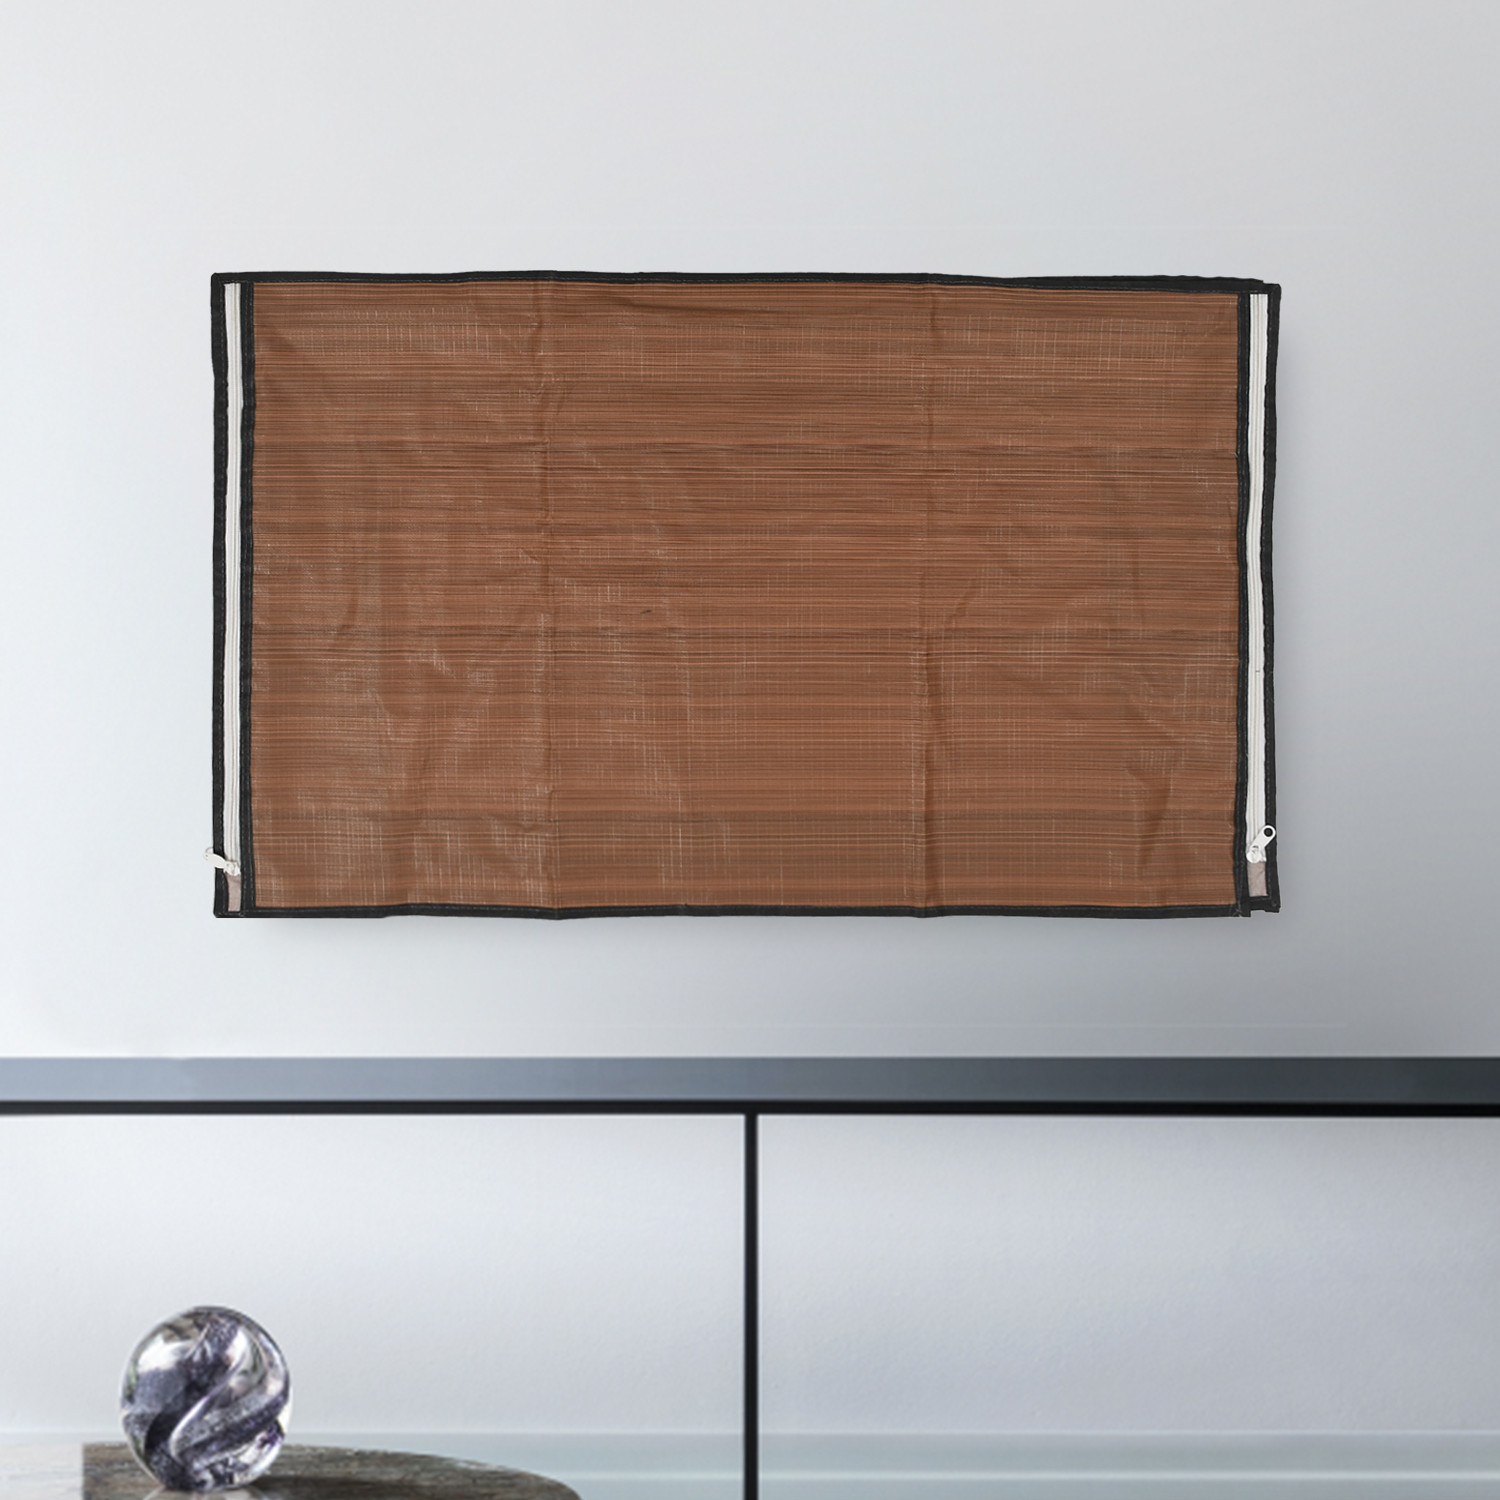 Kuber Industries PVC Wooden Print Waterproof & Dustproof TV Cover, 32 Inch (Brown) 54KM4288